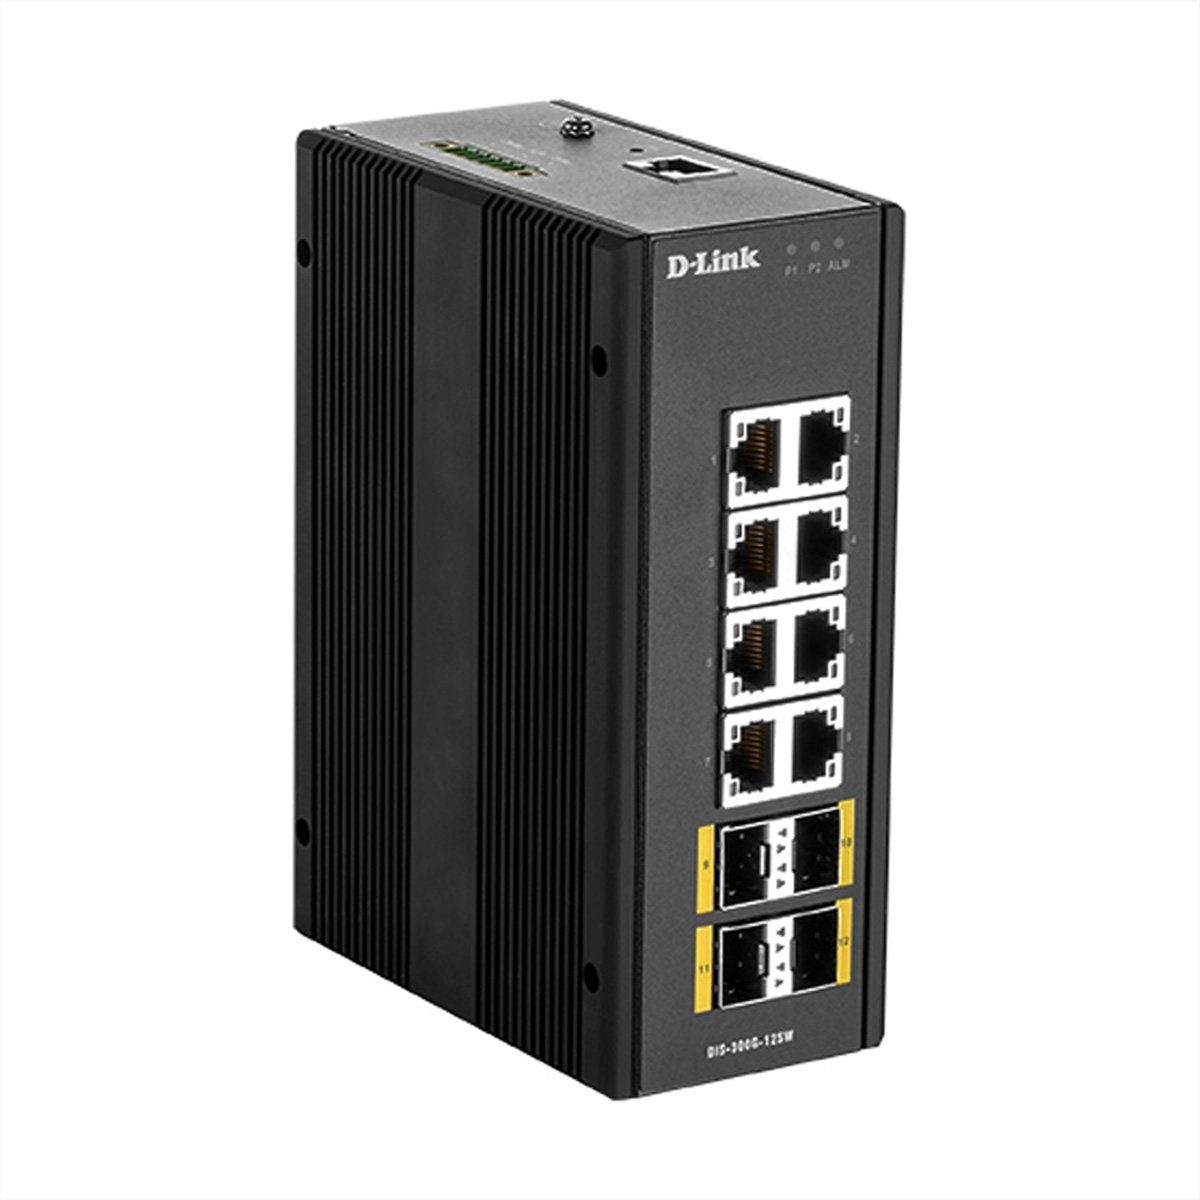 Netzwerk-Switch SwitchLayer2 Managed Gigabit 12-Port Industrial D-Link DIS-300G-12SW